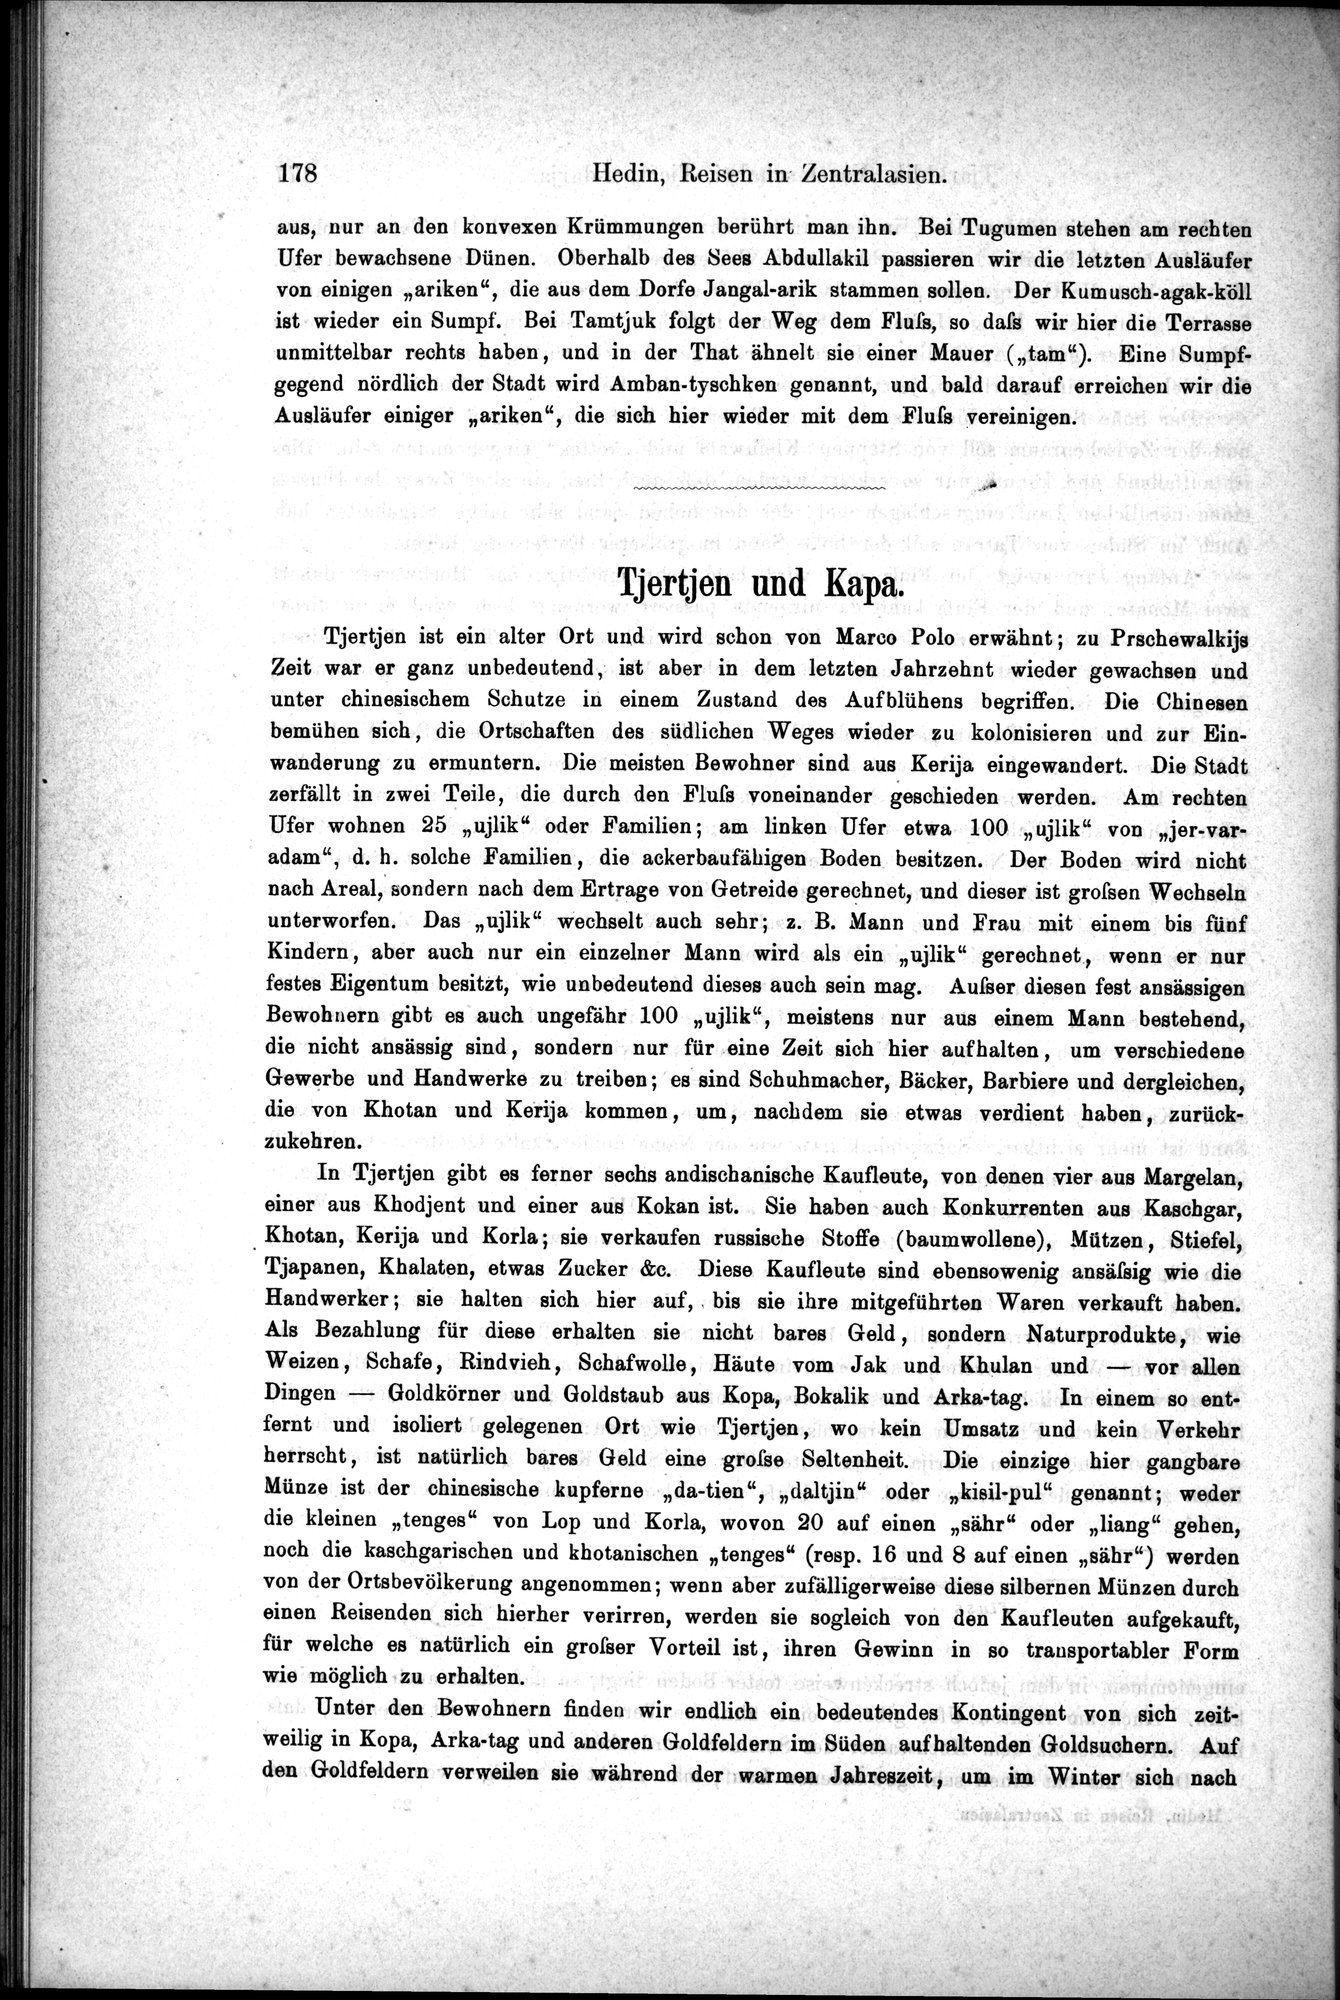 Die Geographische-Wissenschaftlichen Ergebnisse meiner Reisen in Zentralasien, 1894-1897 : vol.1 / Page 190 (Grayscale High Resolution Image)